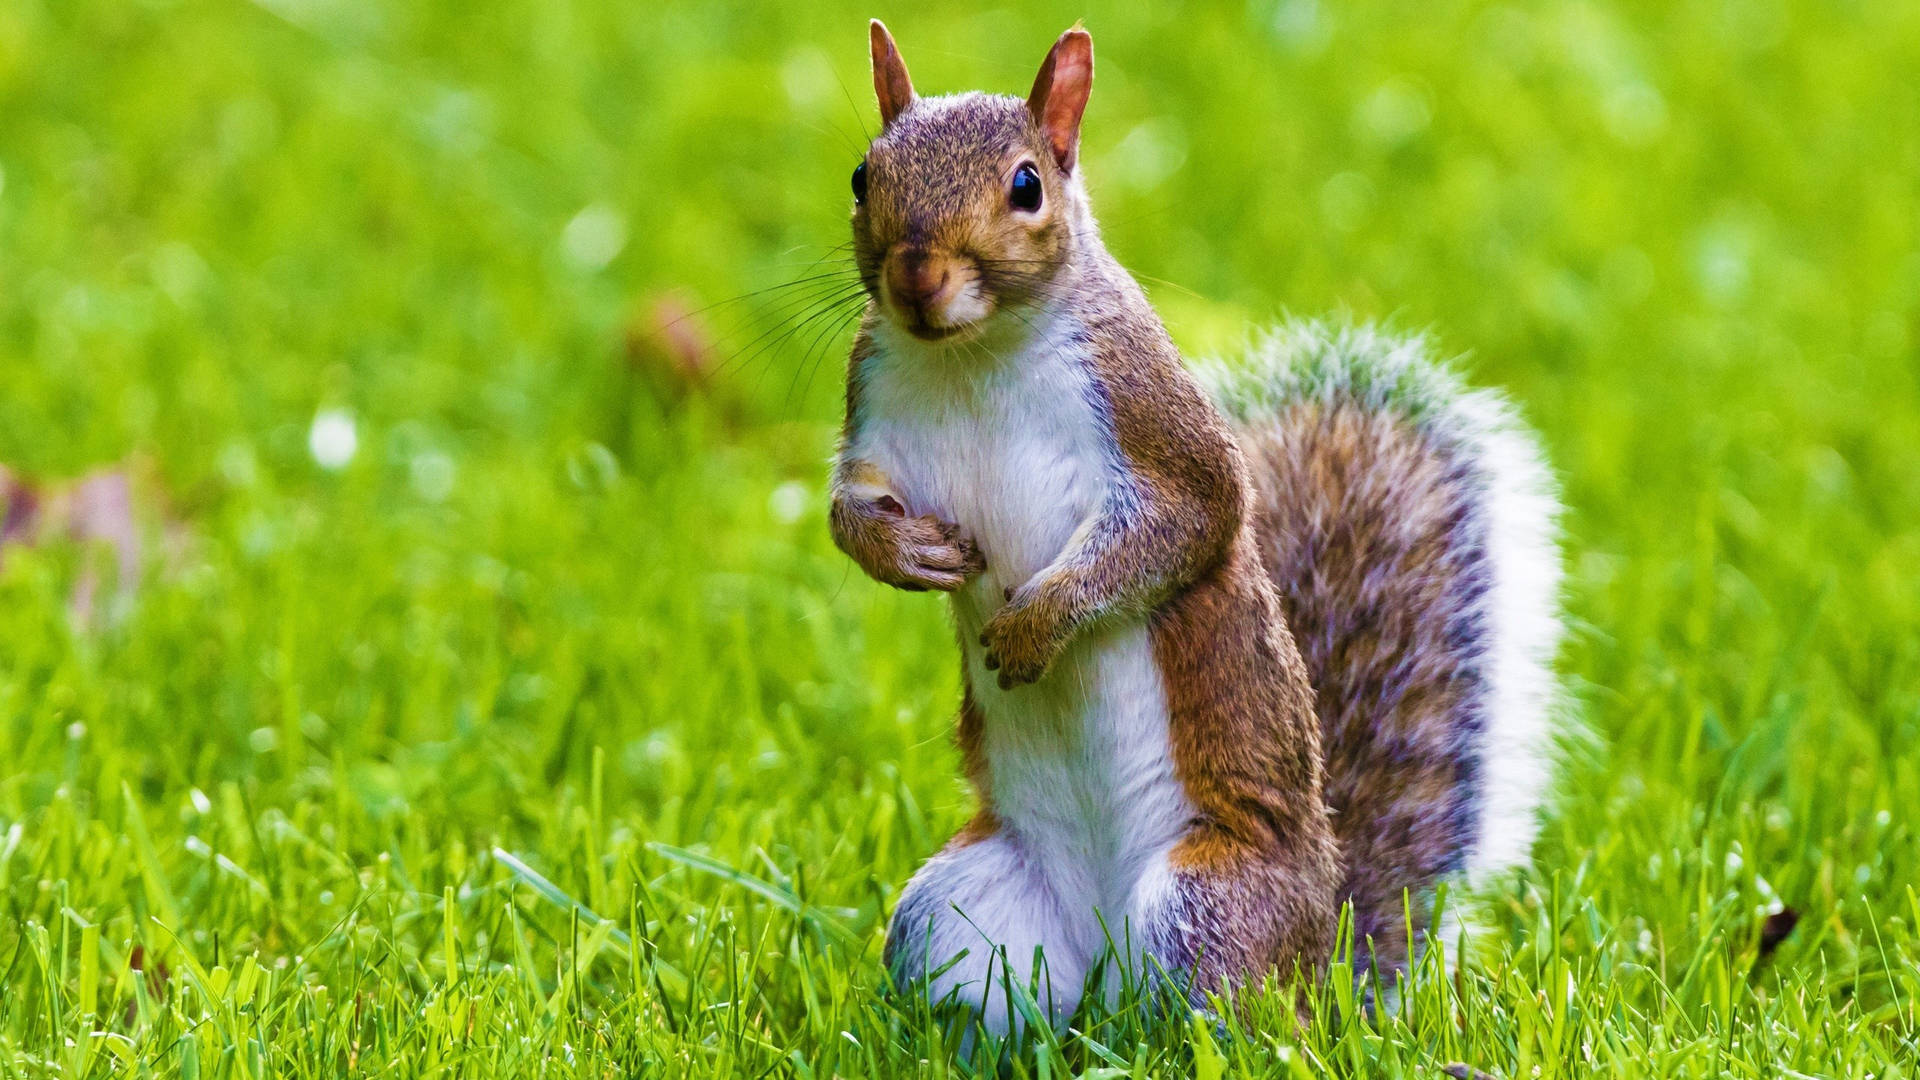 Squirrel Standing On Grass Background